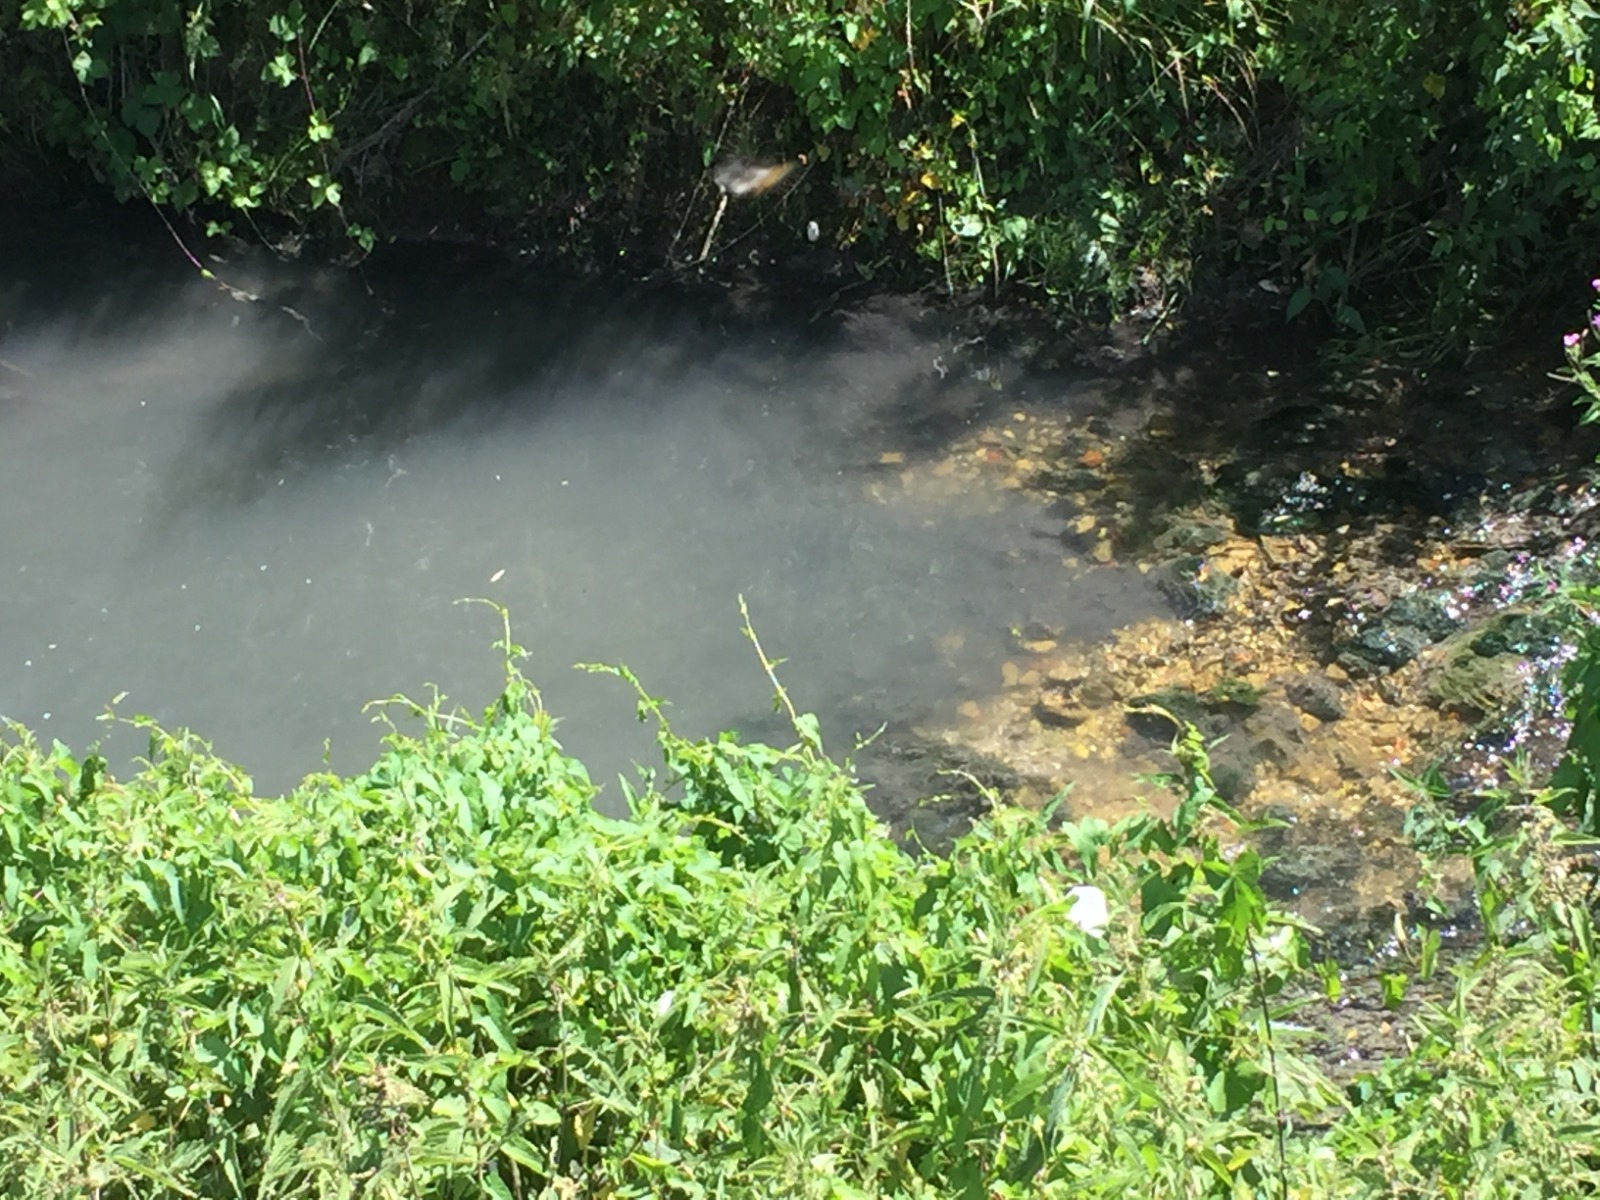 Scarico fiume Imele, acque torbide e maleodoranti, Fare Verde e NOVPC segnalano all’ARTA